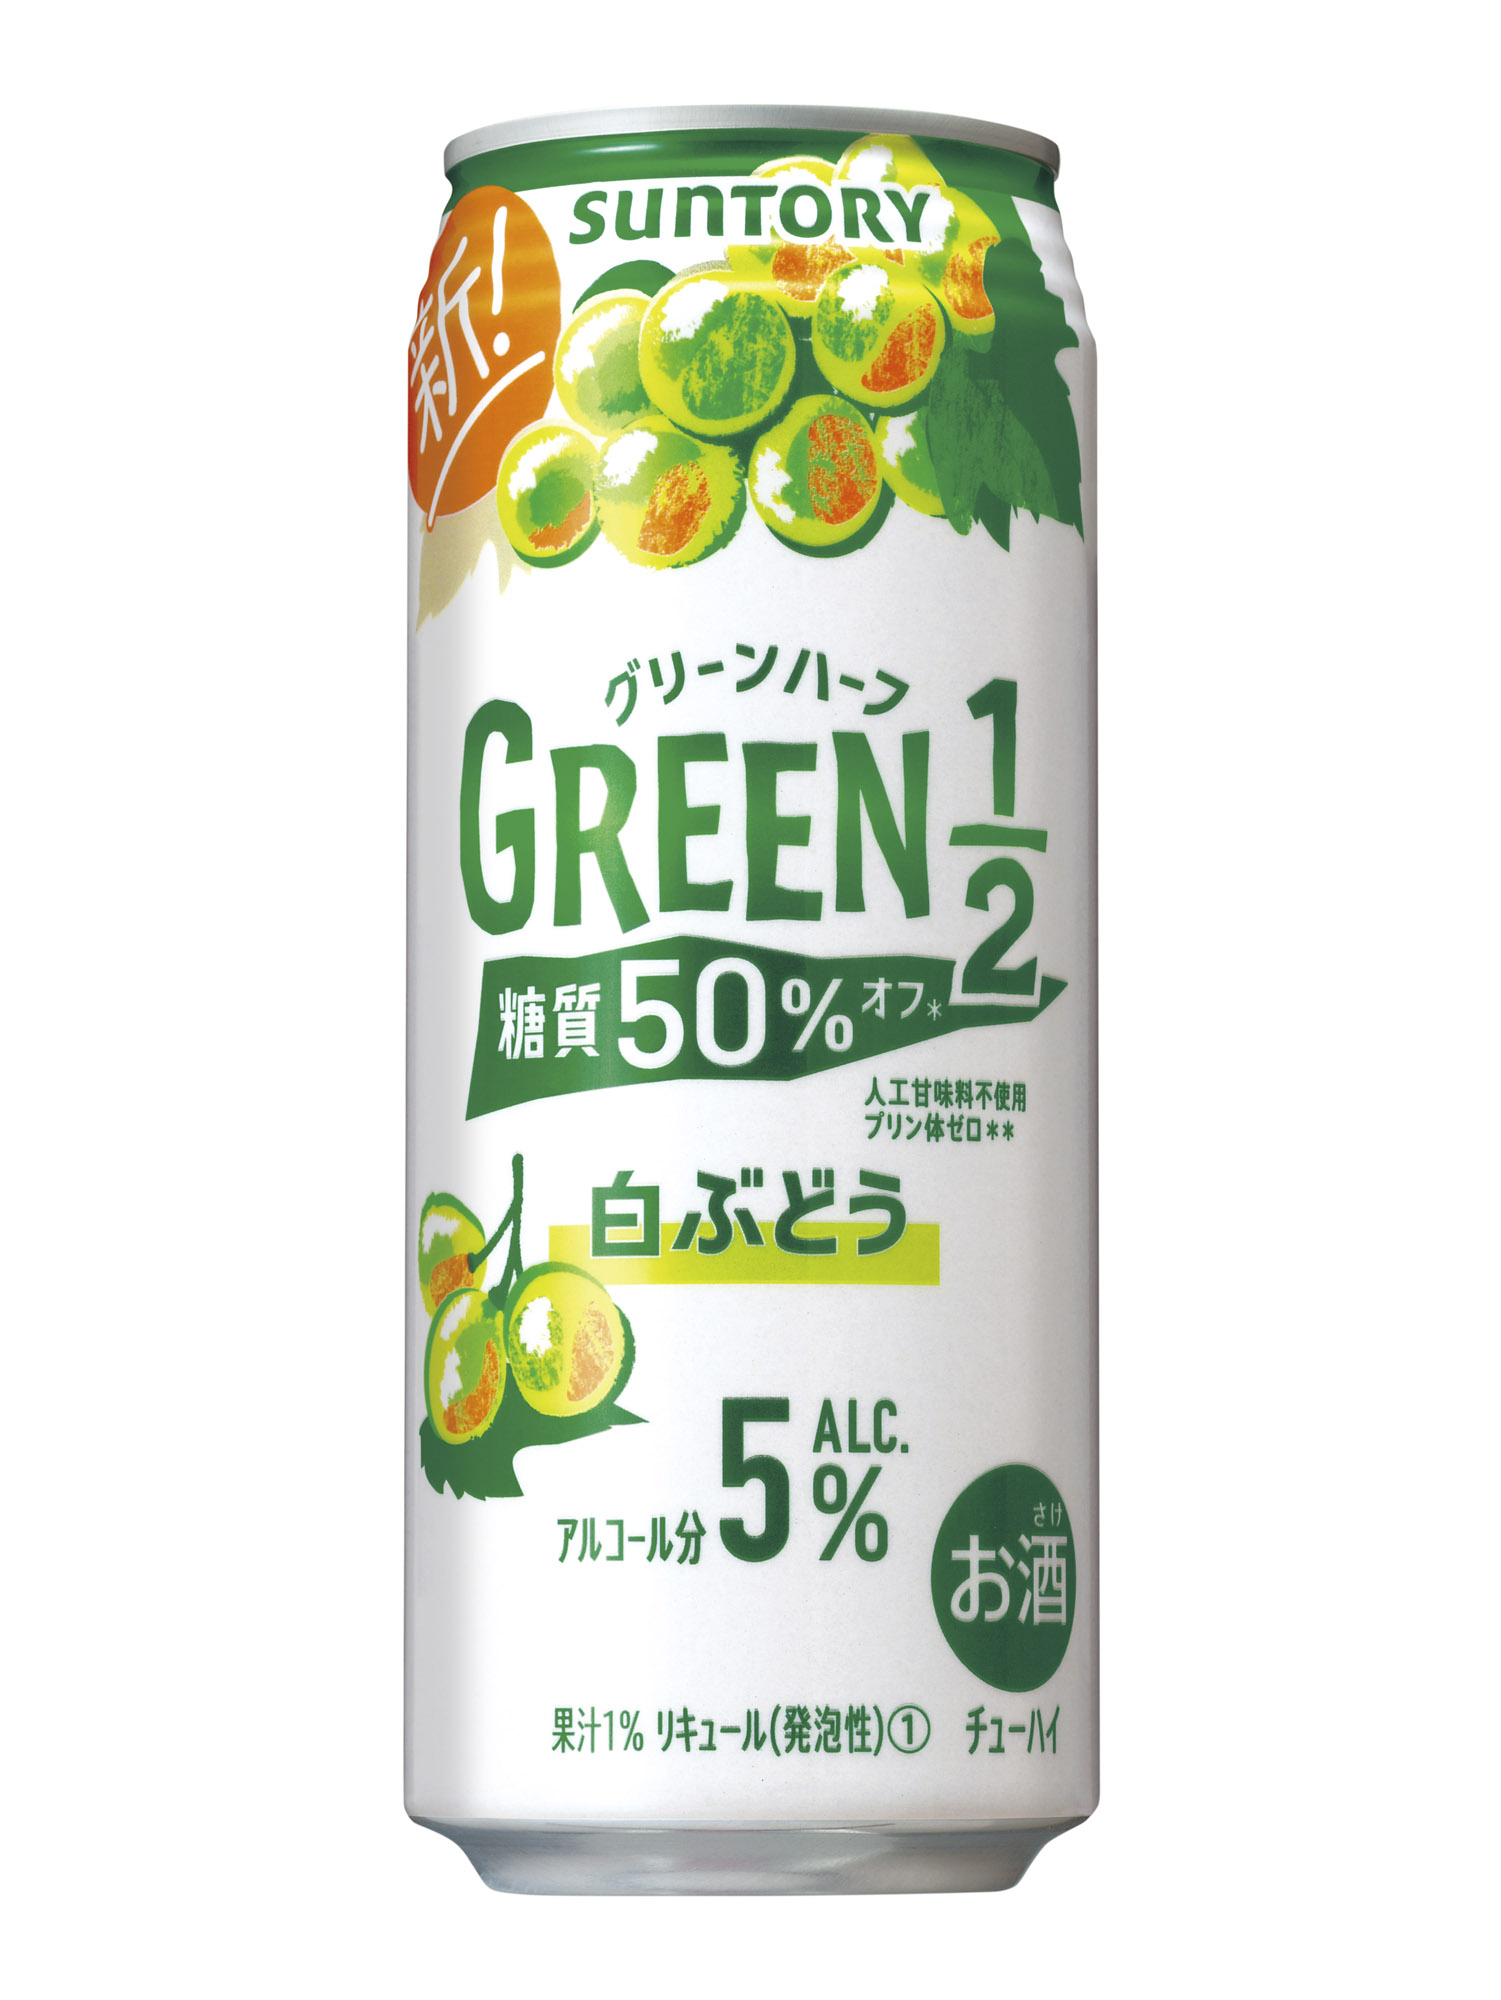 Green1 2 グリーンハーフ 白ぶどう 新発売 21年10月26日 ニュースリリース サントリー